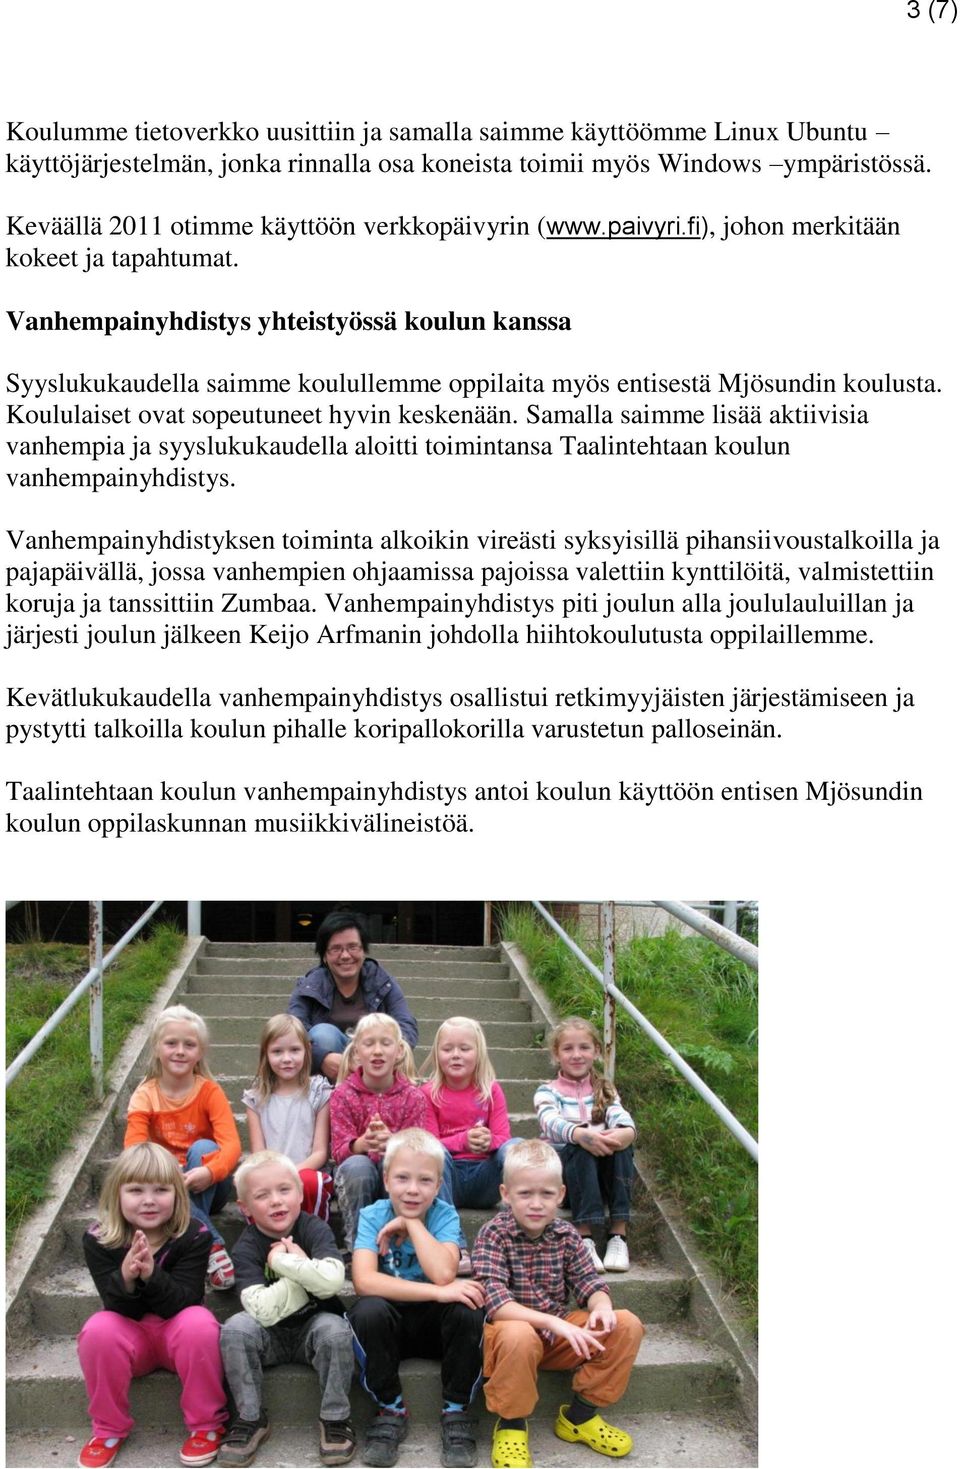 Vanhempainyhdistys yhteistyössä koulun kanssa Syyslukukaudella saimme koulullemme oppilaita myös entisestä Mjösundin koulusta. Koululaiset ovat sopeutuneet hyvin keskenään.